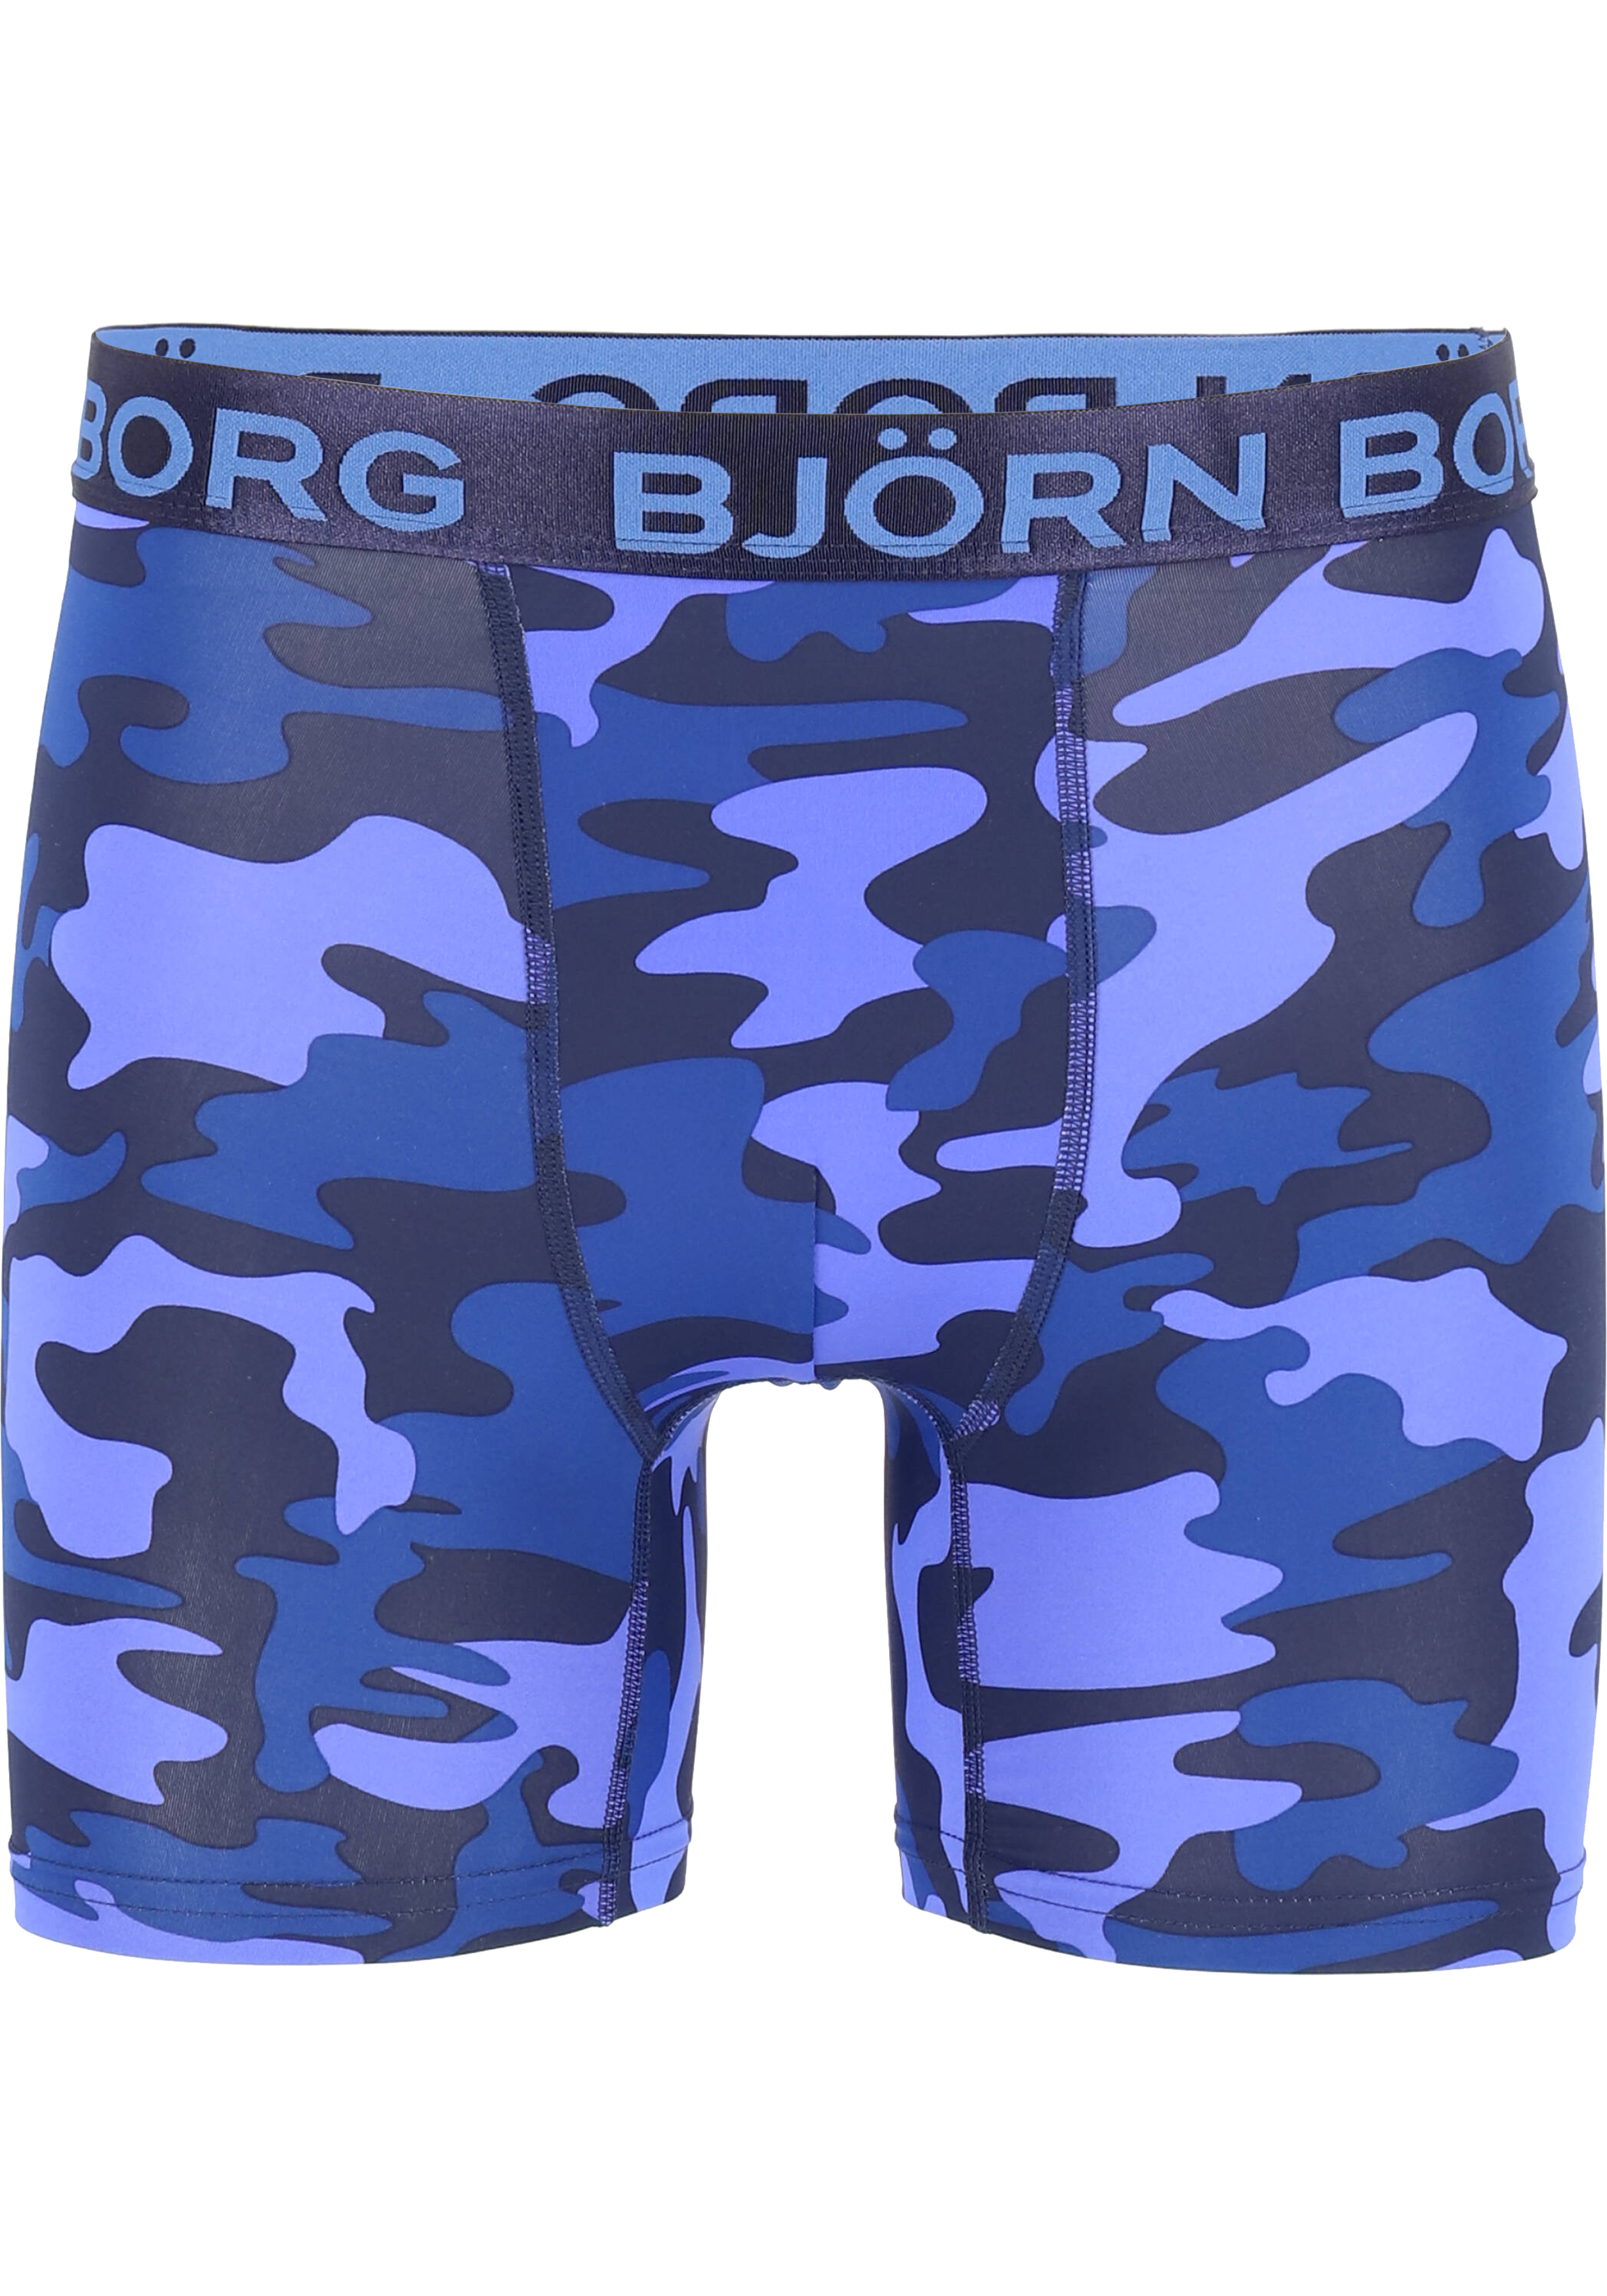 Lake Taupo Fokken Haan Bjorn Borg Boxers Performance microfiber, blauw camo print - Shop de  nieuwste voorjaarsmode